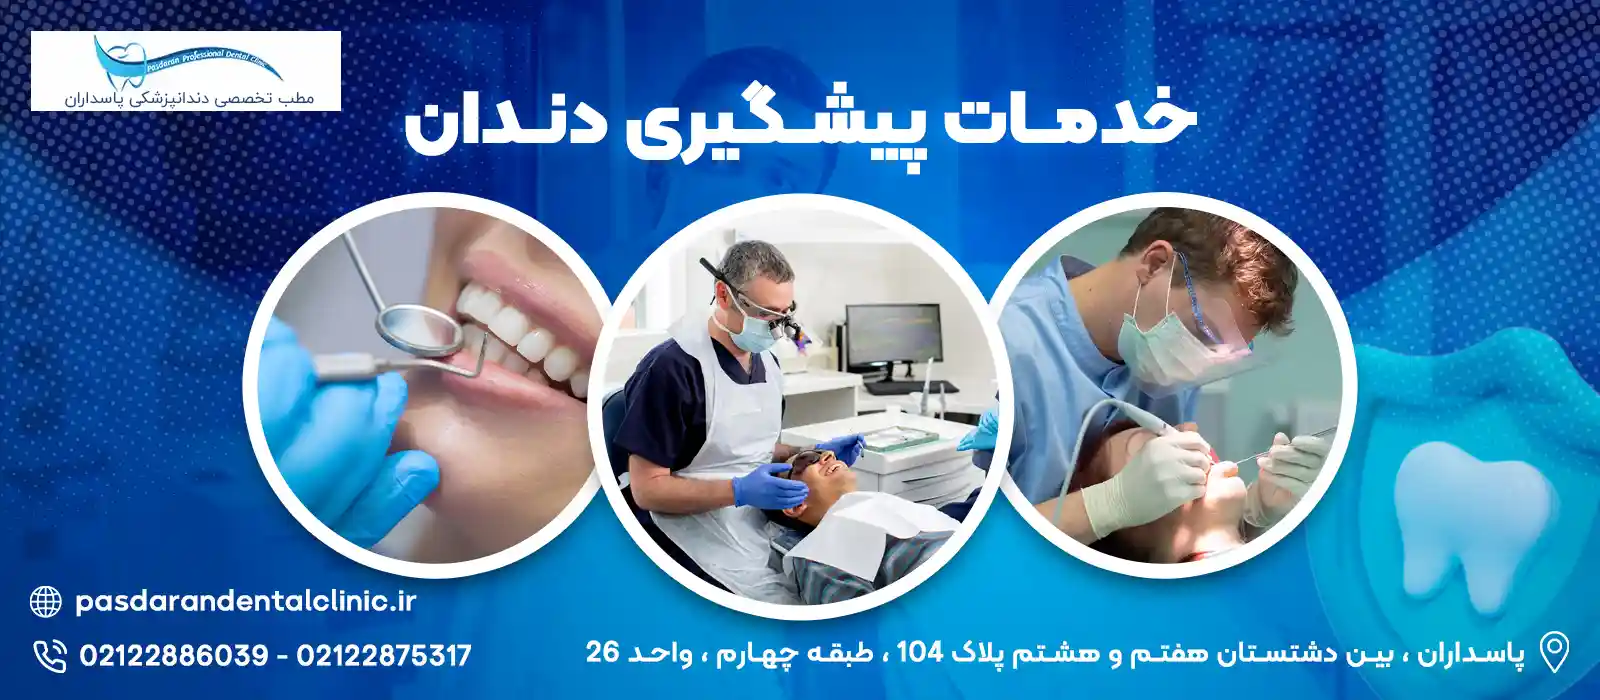 Preventive dental services in Tehran